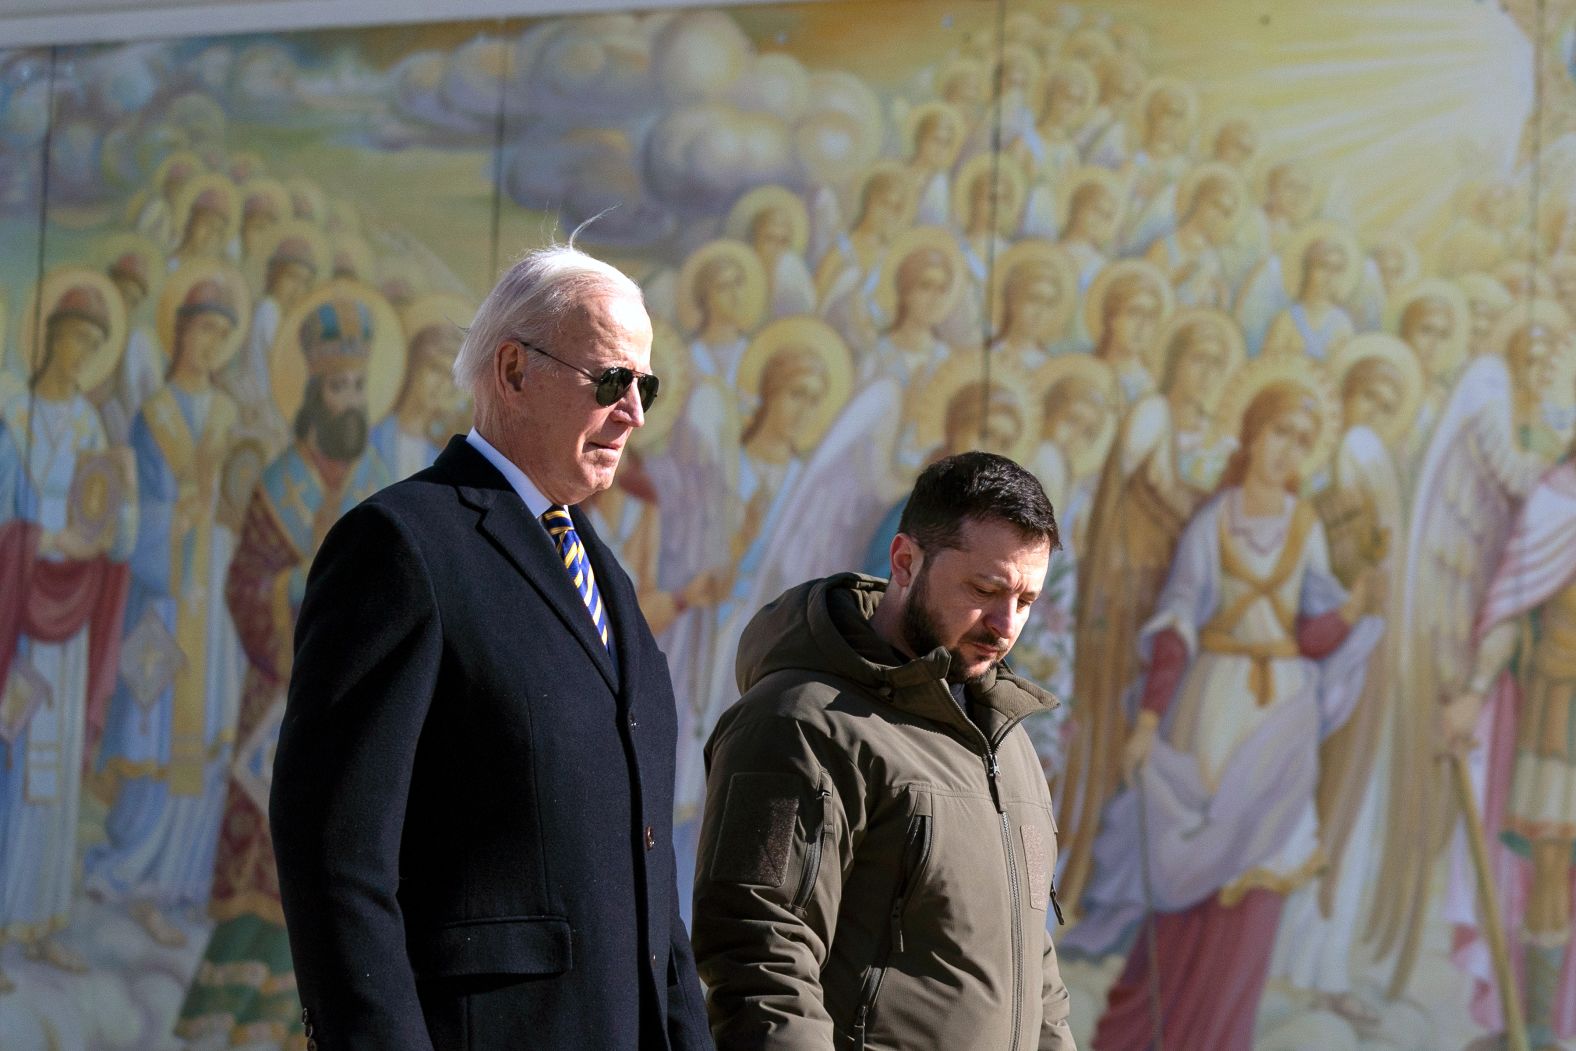 Biden walks with Ukrainian President Volodymyr Zelensky during a <a href="http://www.cnn.com/2023/02/20/world/gallery/biden-visit-ukraine-poland/index.html" target="_blank">surprise visit to Kyiv, Ukraine</a>, in February 2023.